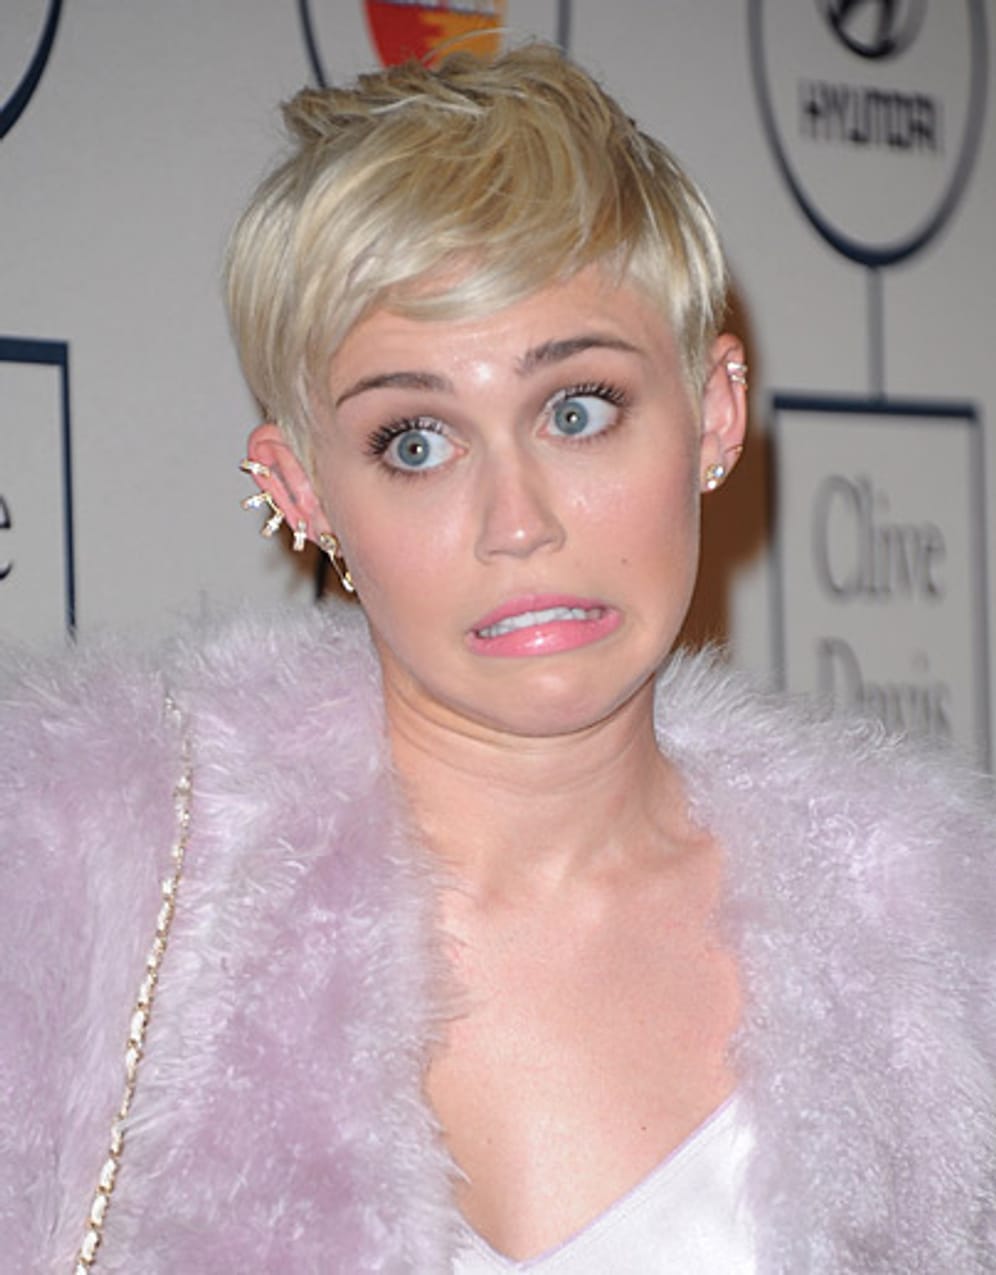 Ausgerechnet der ehemalige Kinderstar Miley Cyrus scheint nicht viel für den Nachwuchs übrig zu haben: "Ich mag keine Kinder", sagte die Musikerin in einem Interview mit dem "W Magazine".